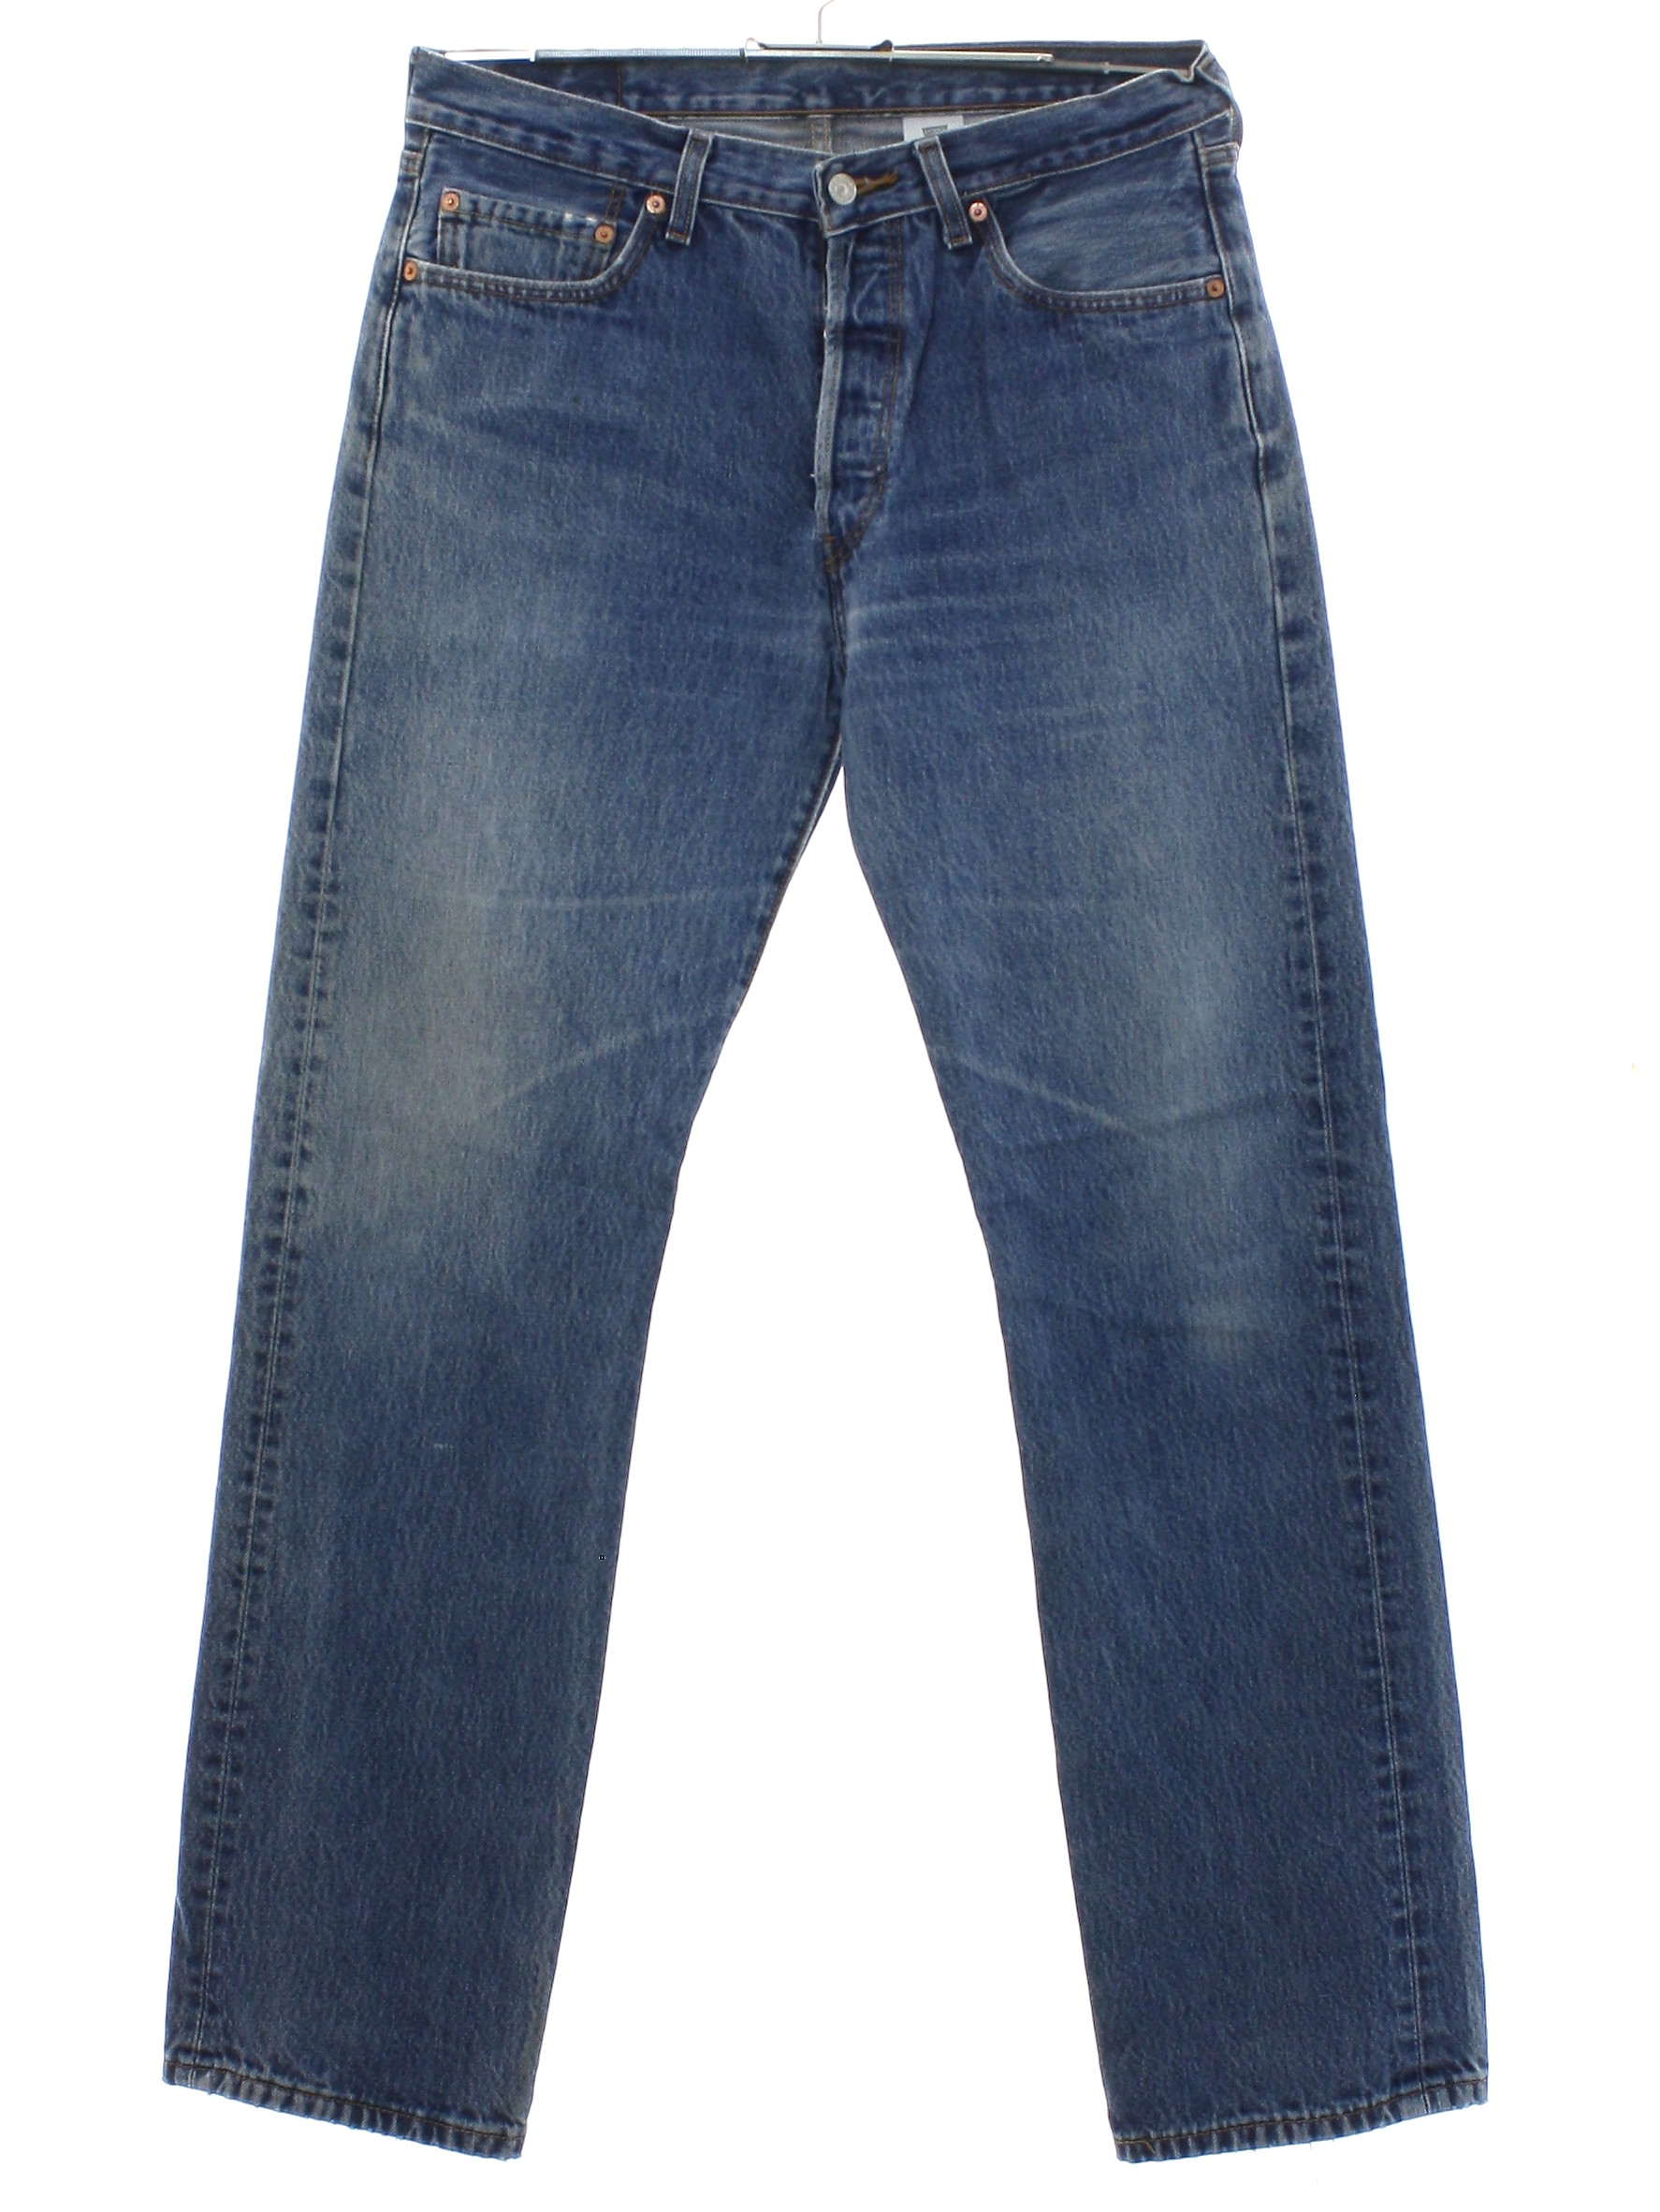 Nineties Vintage Pants: Late 90s or Early y2k 2000s -Levis 501- Mens ...